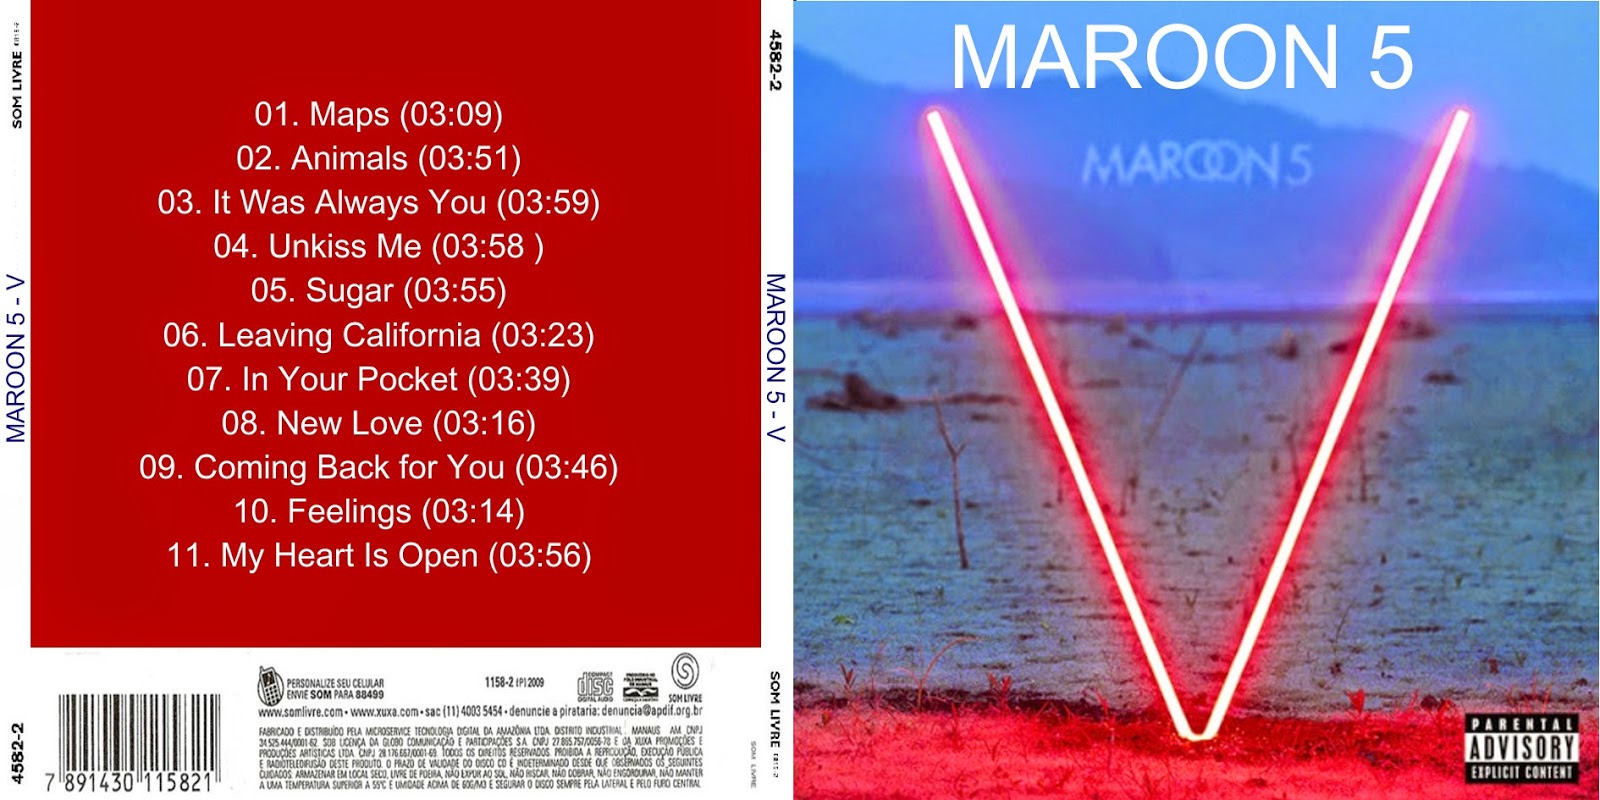 V Maroon 5 album - Wikipedia